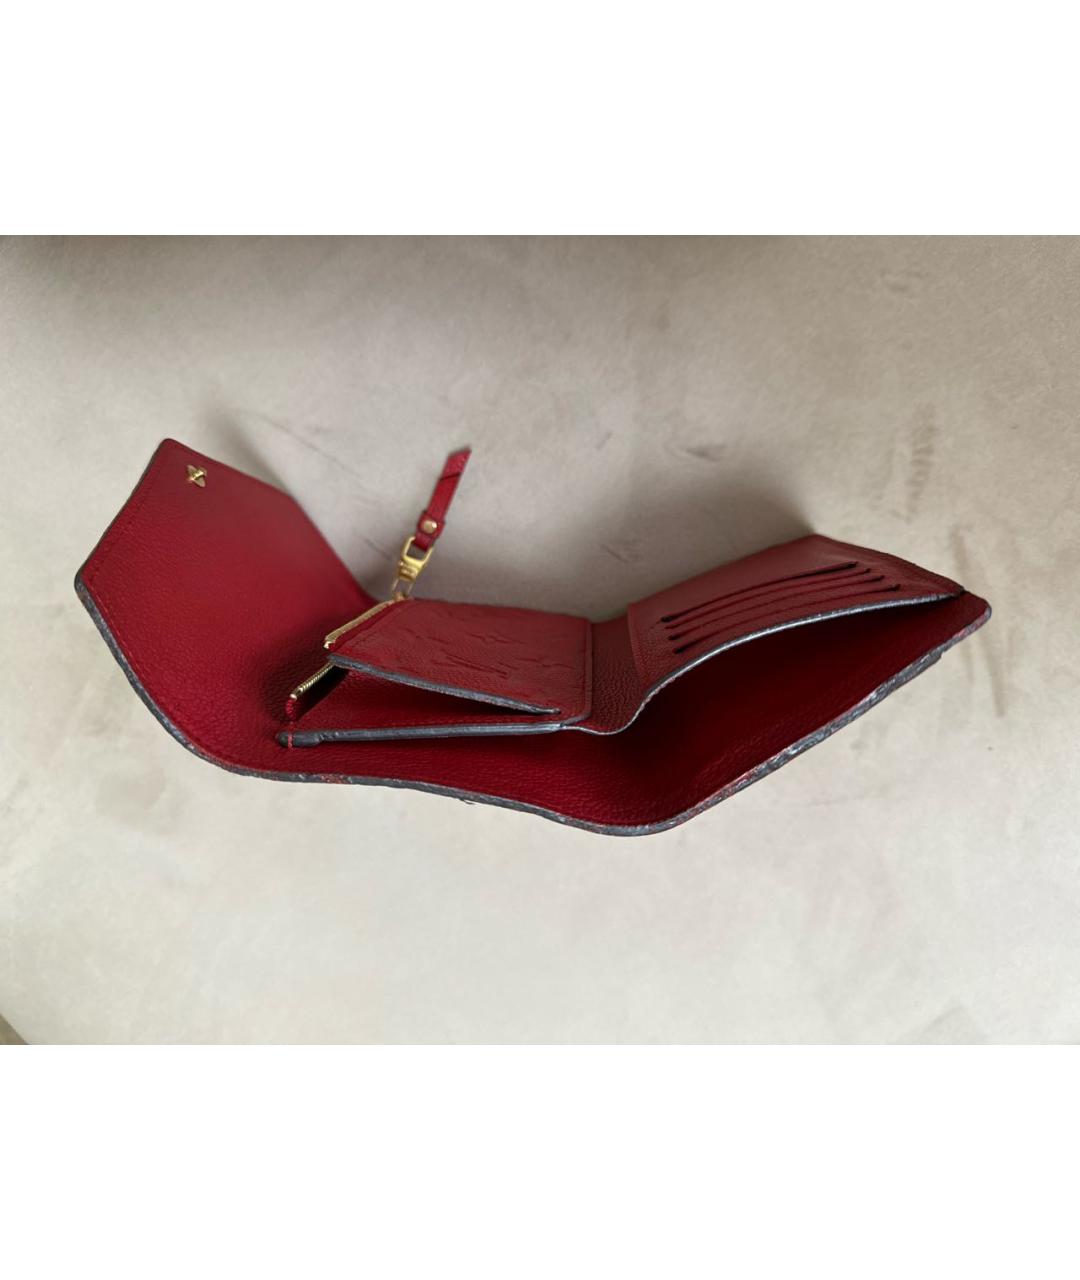 LOUIS VUITTON PRE-OWNED Красный кожаный кошелек, фото 5